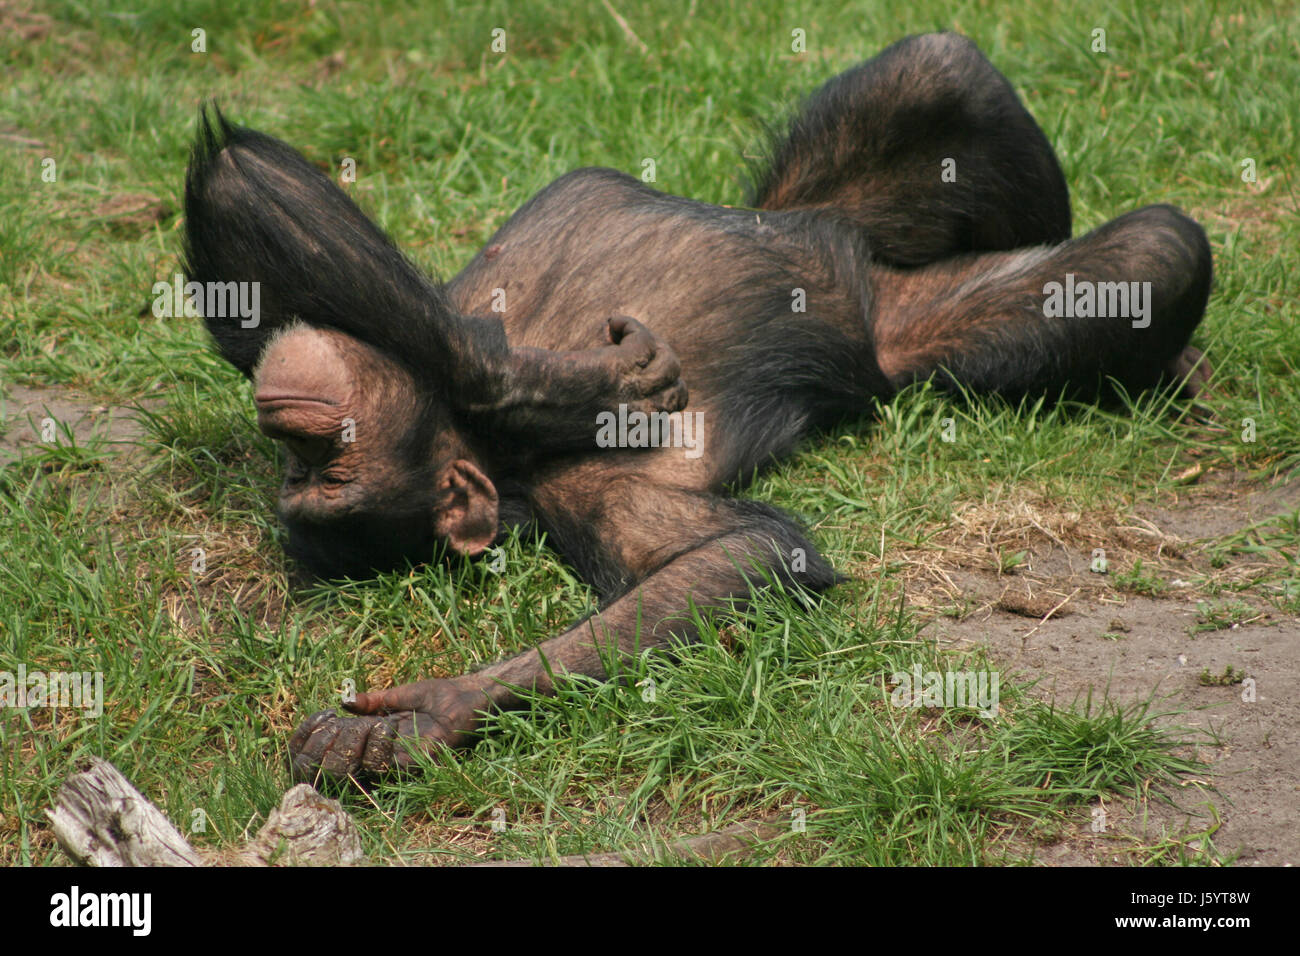 Animal Affe Haut tierisch Schimpansen Menschenaffen Tier wilde Affen Haare Haut Stockfoto